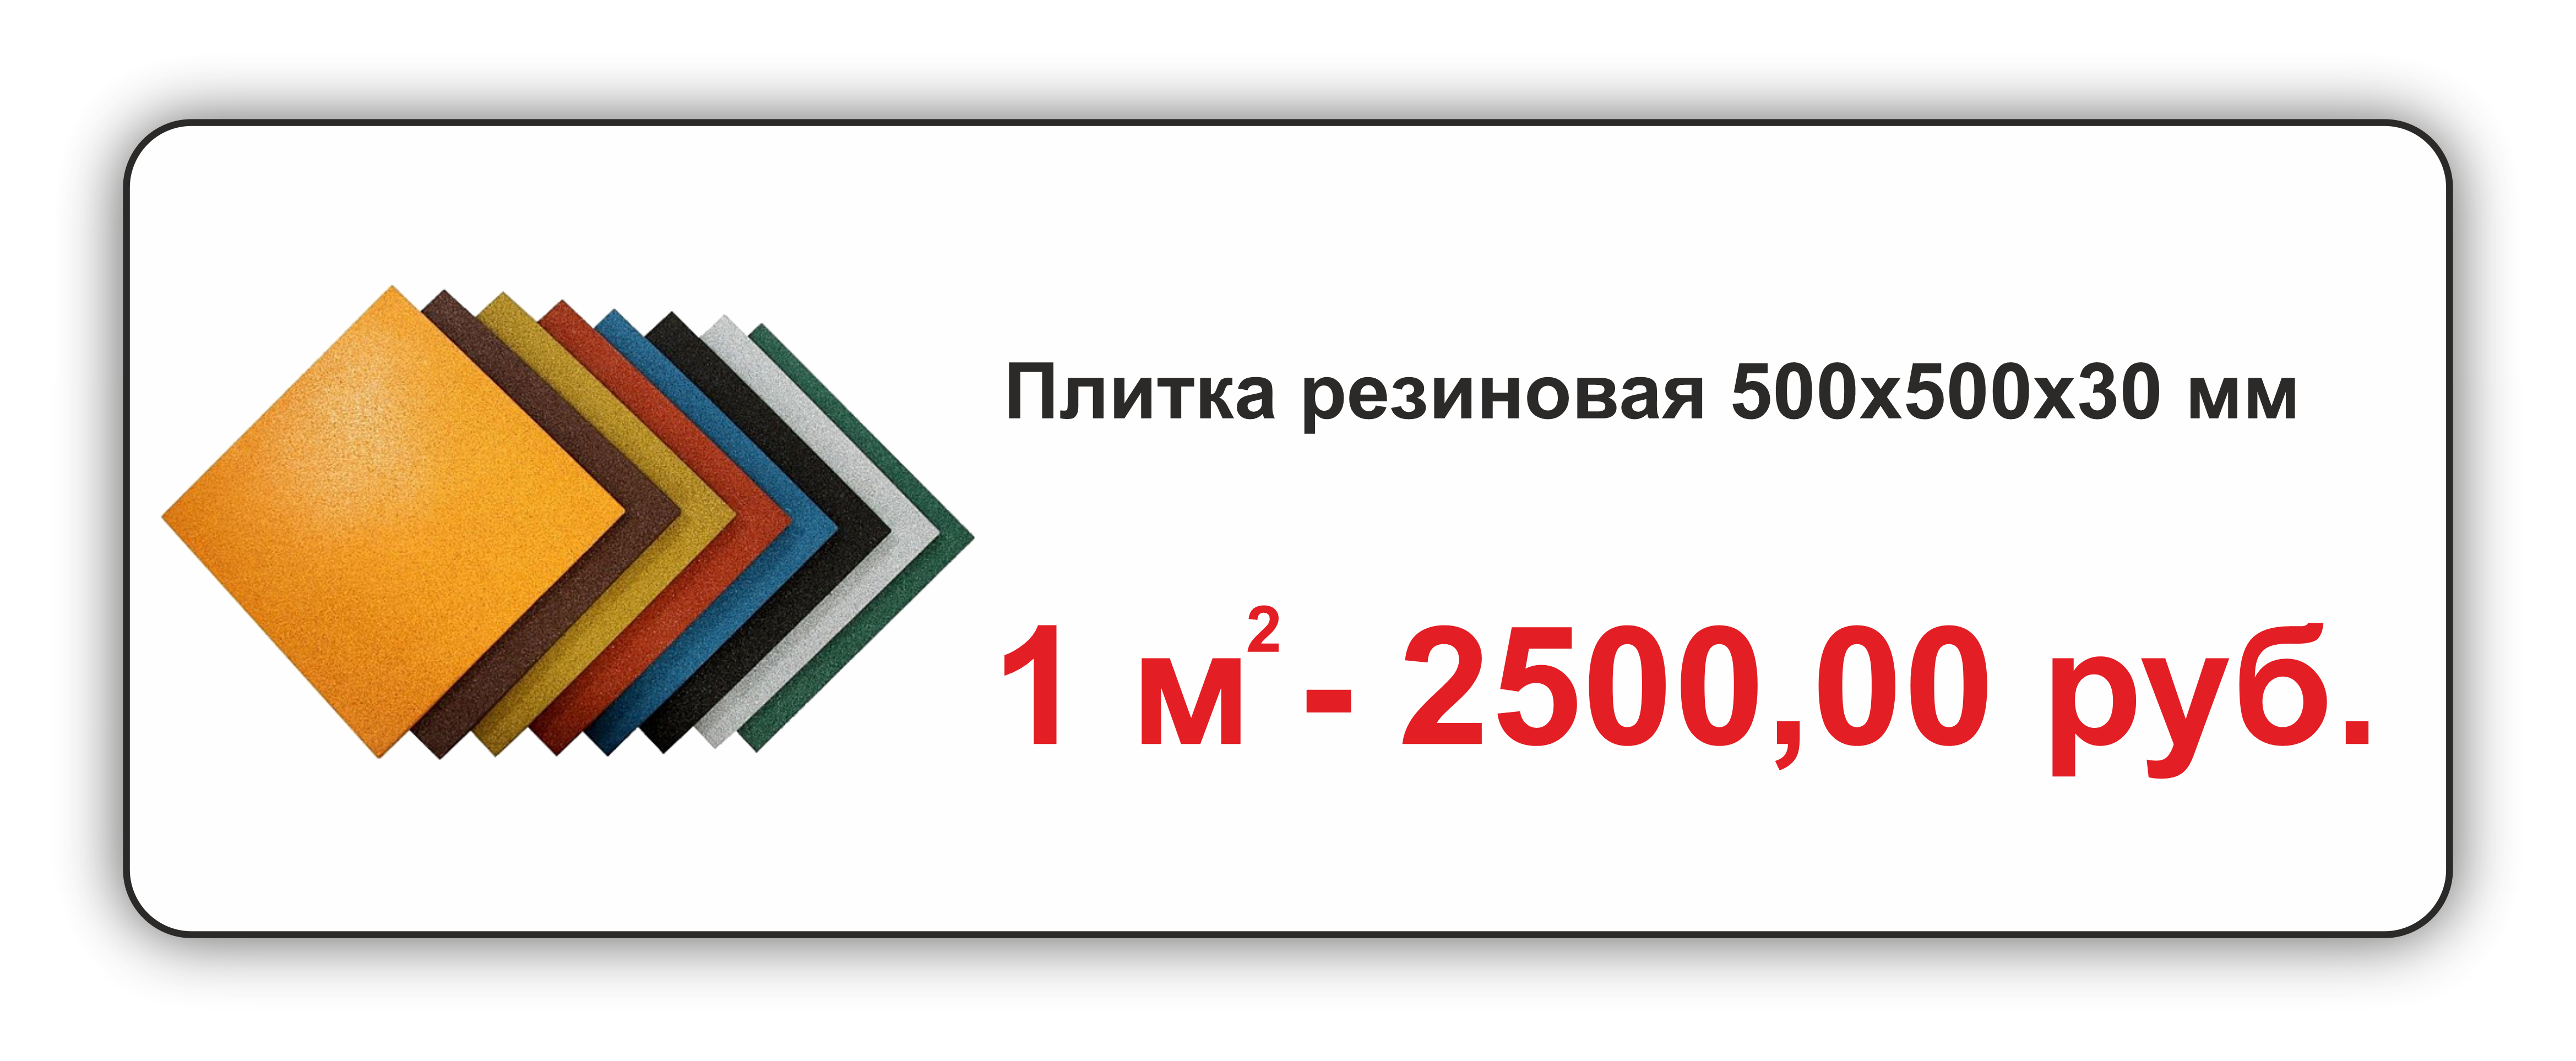 Резиновая плитка 500х500х30мм от производителя Крым